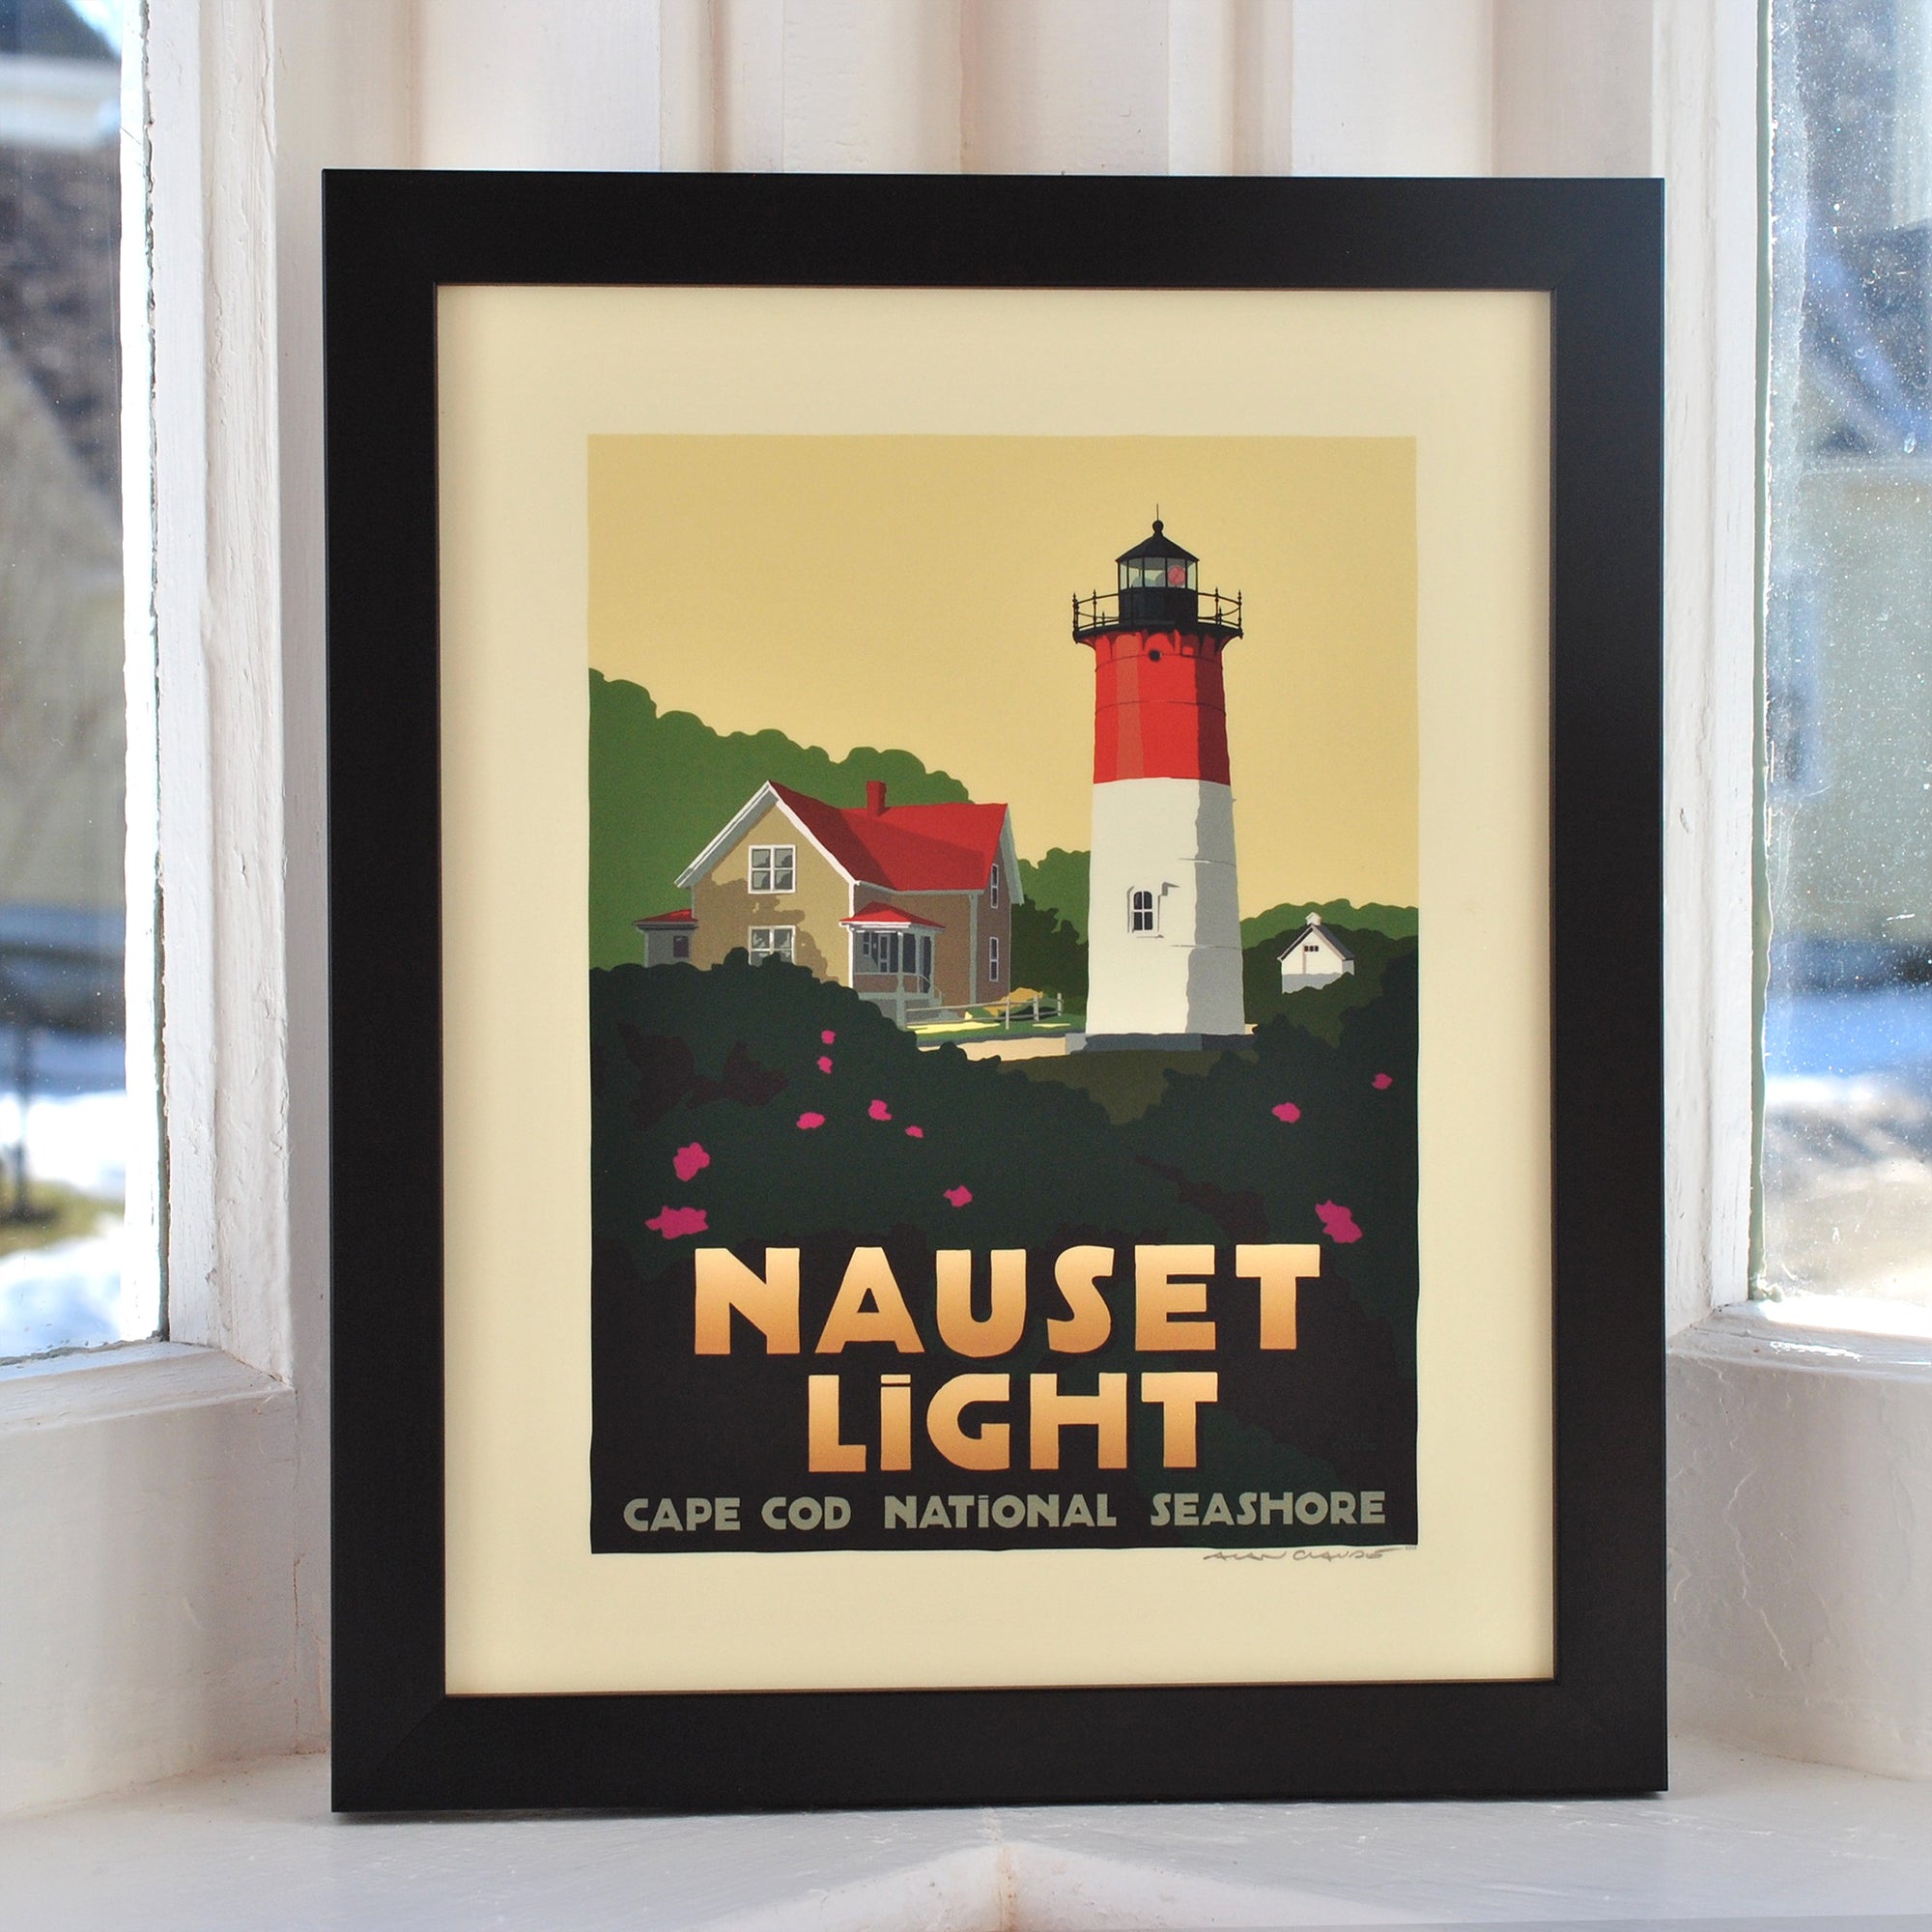 Nauset Light Art Print 8" x 10" Framed Travel Poster By Alan Claude - Massachusetts